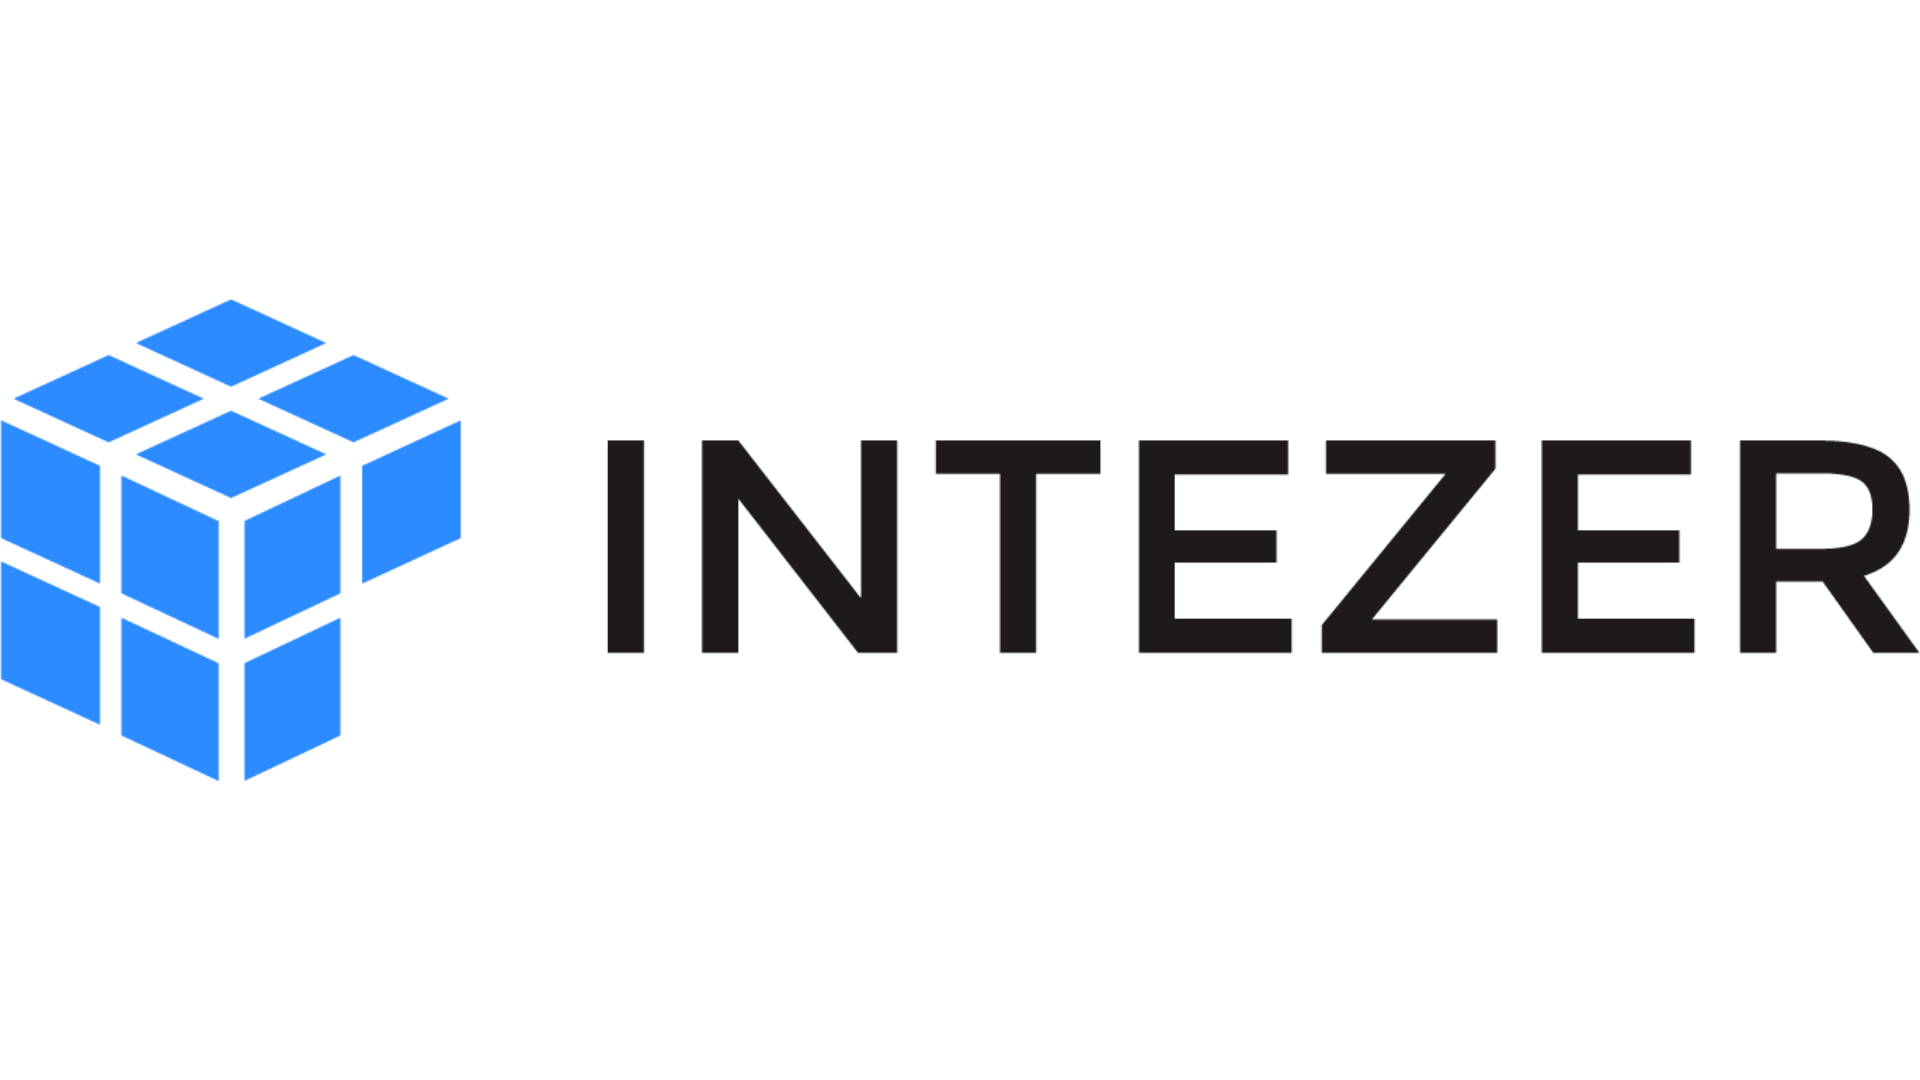 Intezer logo